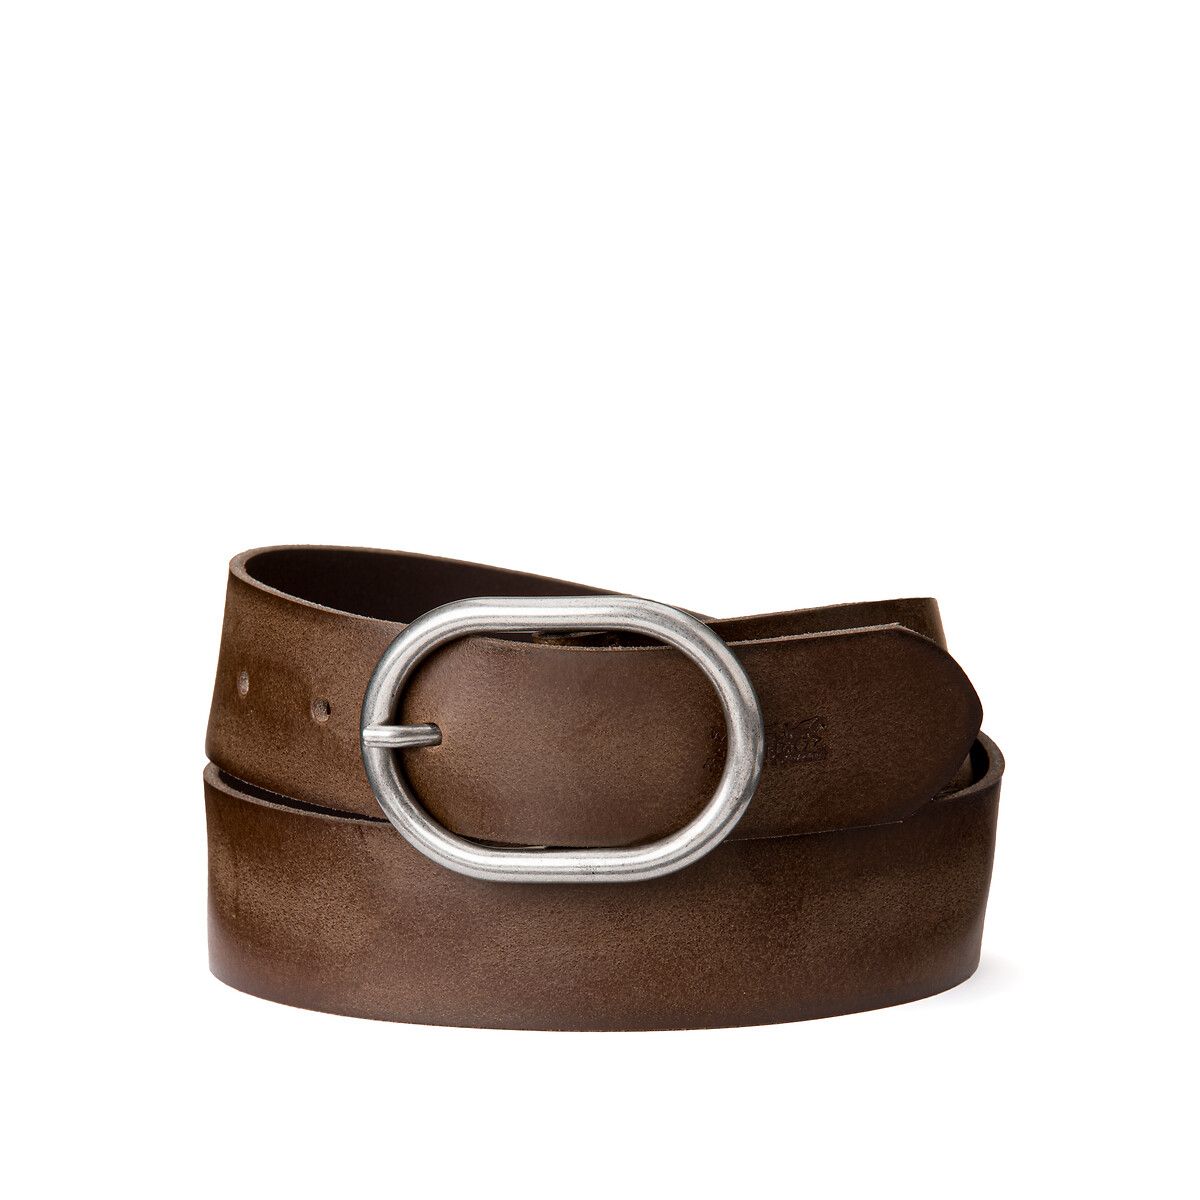 Calneva Leather Belt | La Redoute (UK)